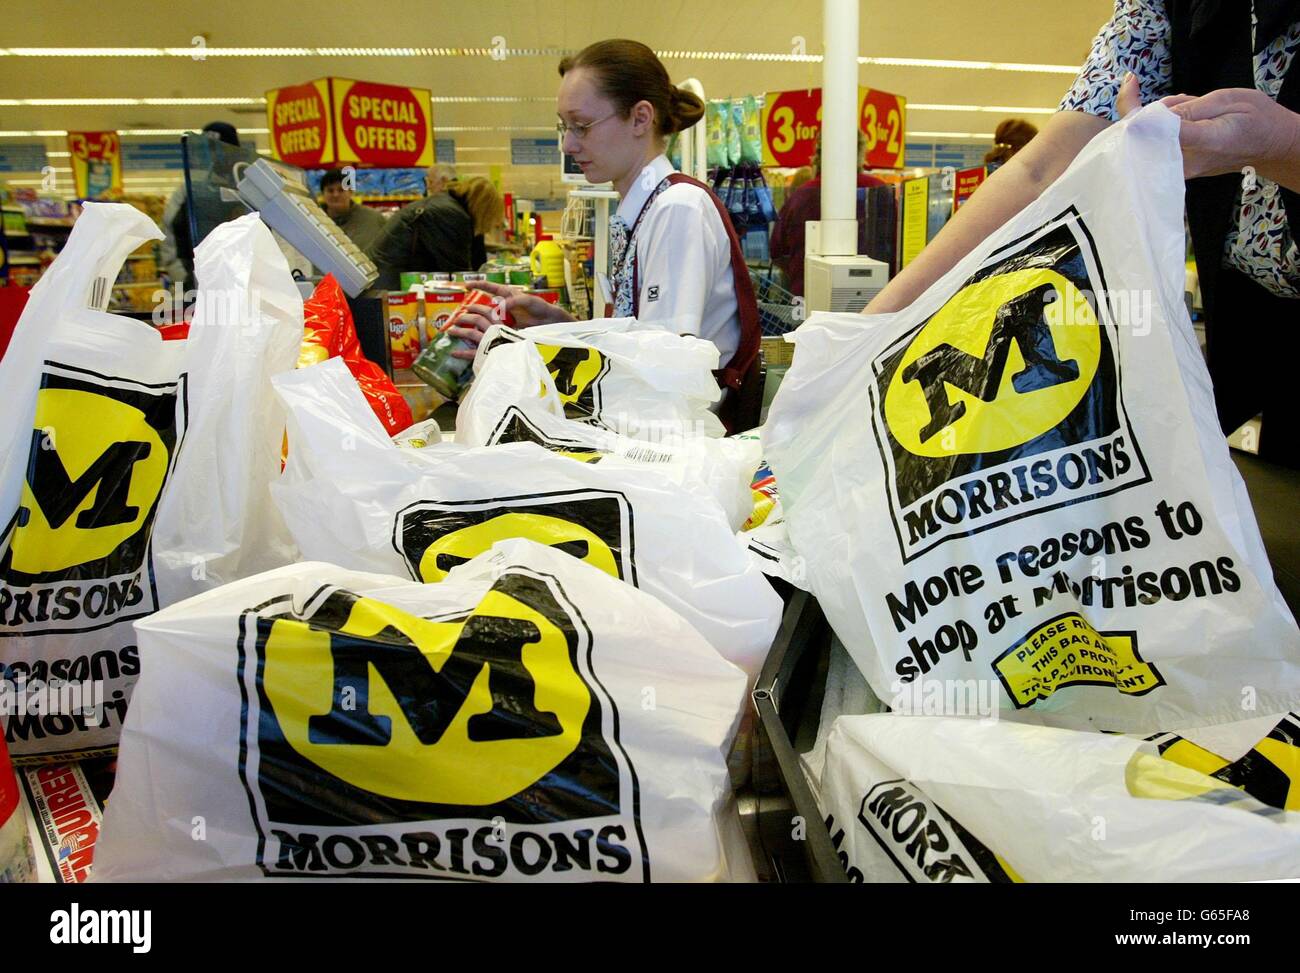 Il checkout nel Supermarket di Morrison a Winsford, il gigante di Cheshire Supermarket Sainsbury gatecrash rivale Morrisons ha concordato l'acquisizione di Safeway con i dettagli di una bumper 3.2 miliardi di offerta. 17/10/04:la catena di supermercati è di vendere fino a 120 dei suoi negozi più piccoli in un affare di 250 milioni con il gruppo rivale Somersfield, è stato riferito Domenica 17 2004 ottobre. Morrisons ha raccolto i punti vendita nell'acquisizione di Safeway da 3 miliardi di marzo, ma li ha ritenuti troppo piccoli per adattarsi alla sua strategia. L'accordo con Somerfield potrebbe essere annunciato giovedì, quando Bradford-based Morrisons è anche a causa di svelare Foto Stock